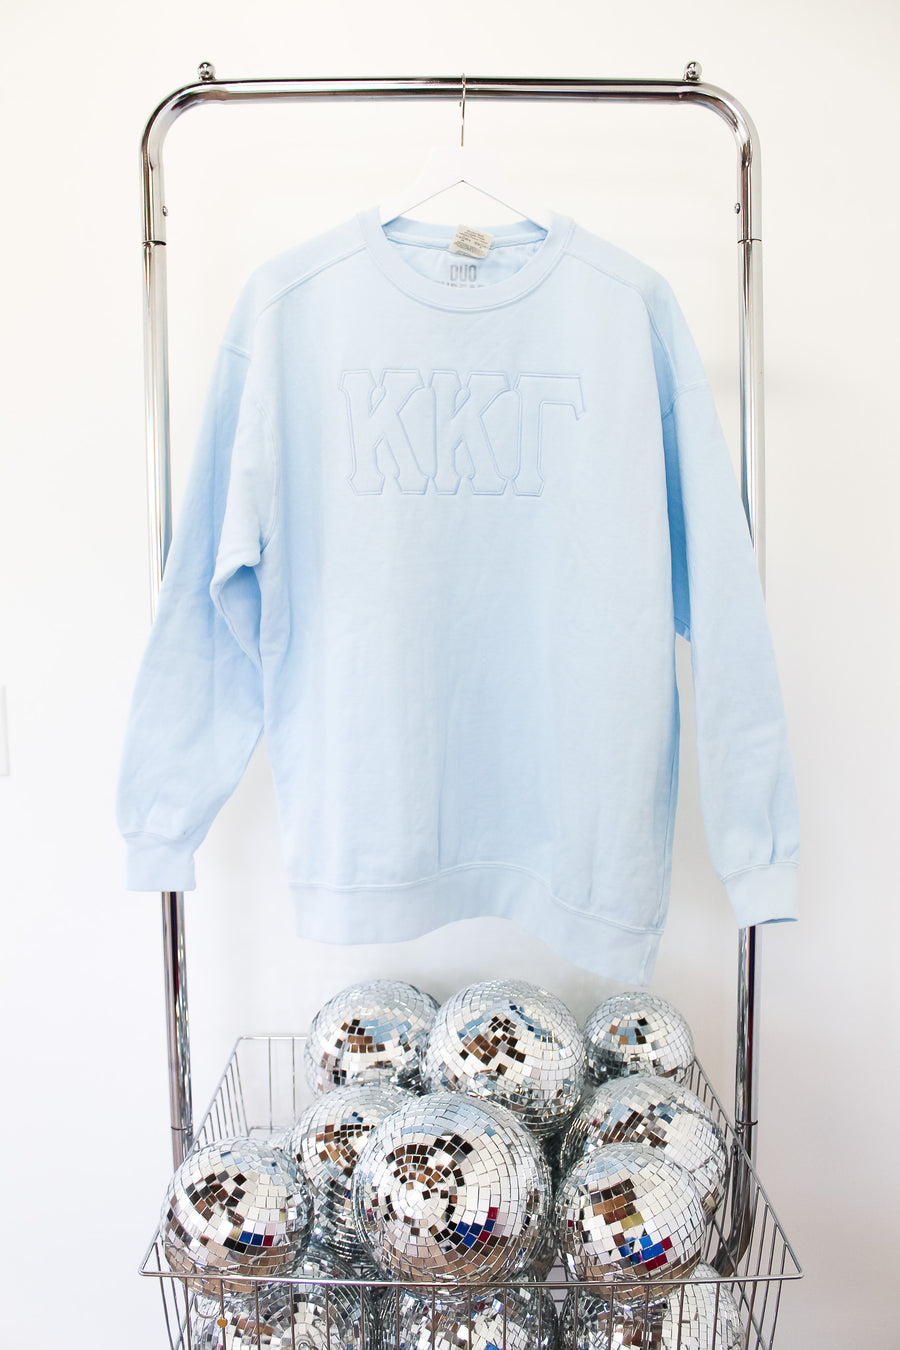 Kappa Kappa Gamma Suzette Embroidered Crew - XL LT BLUE